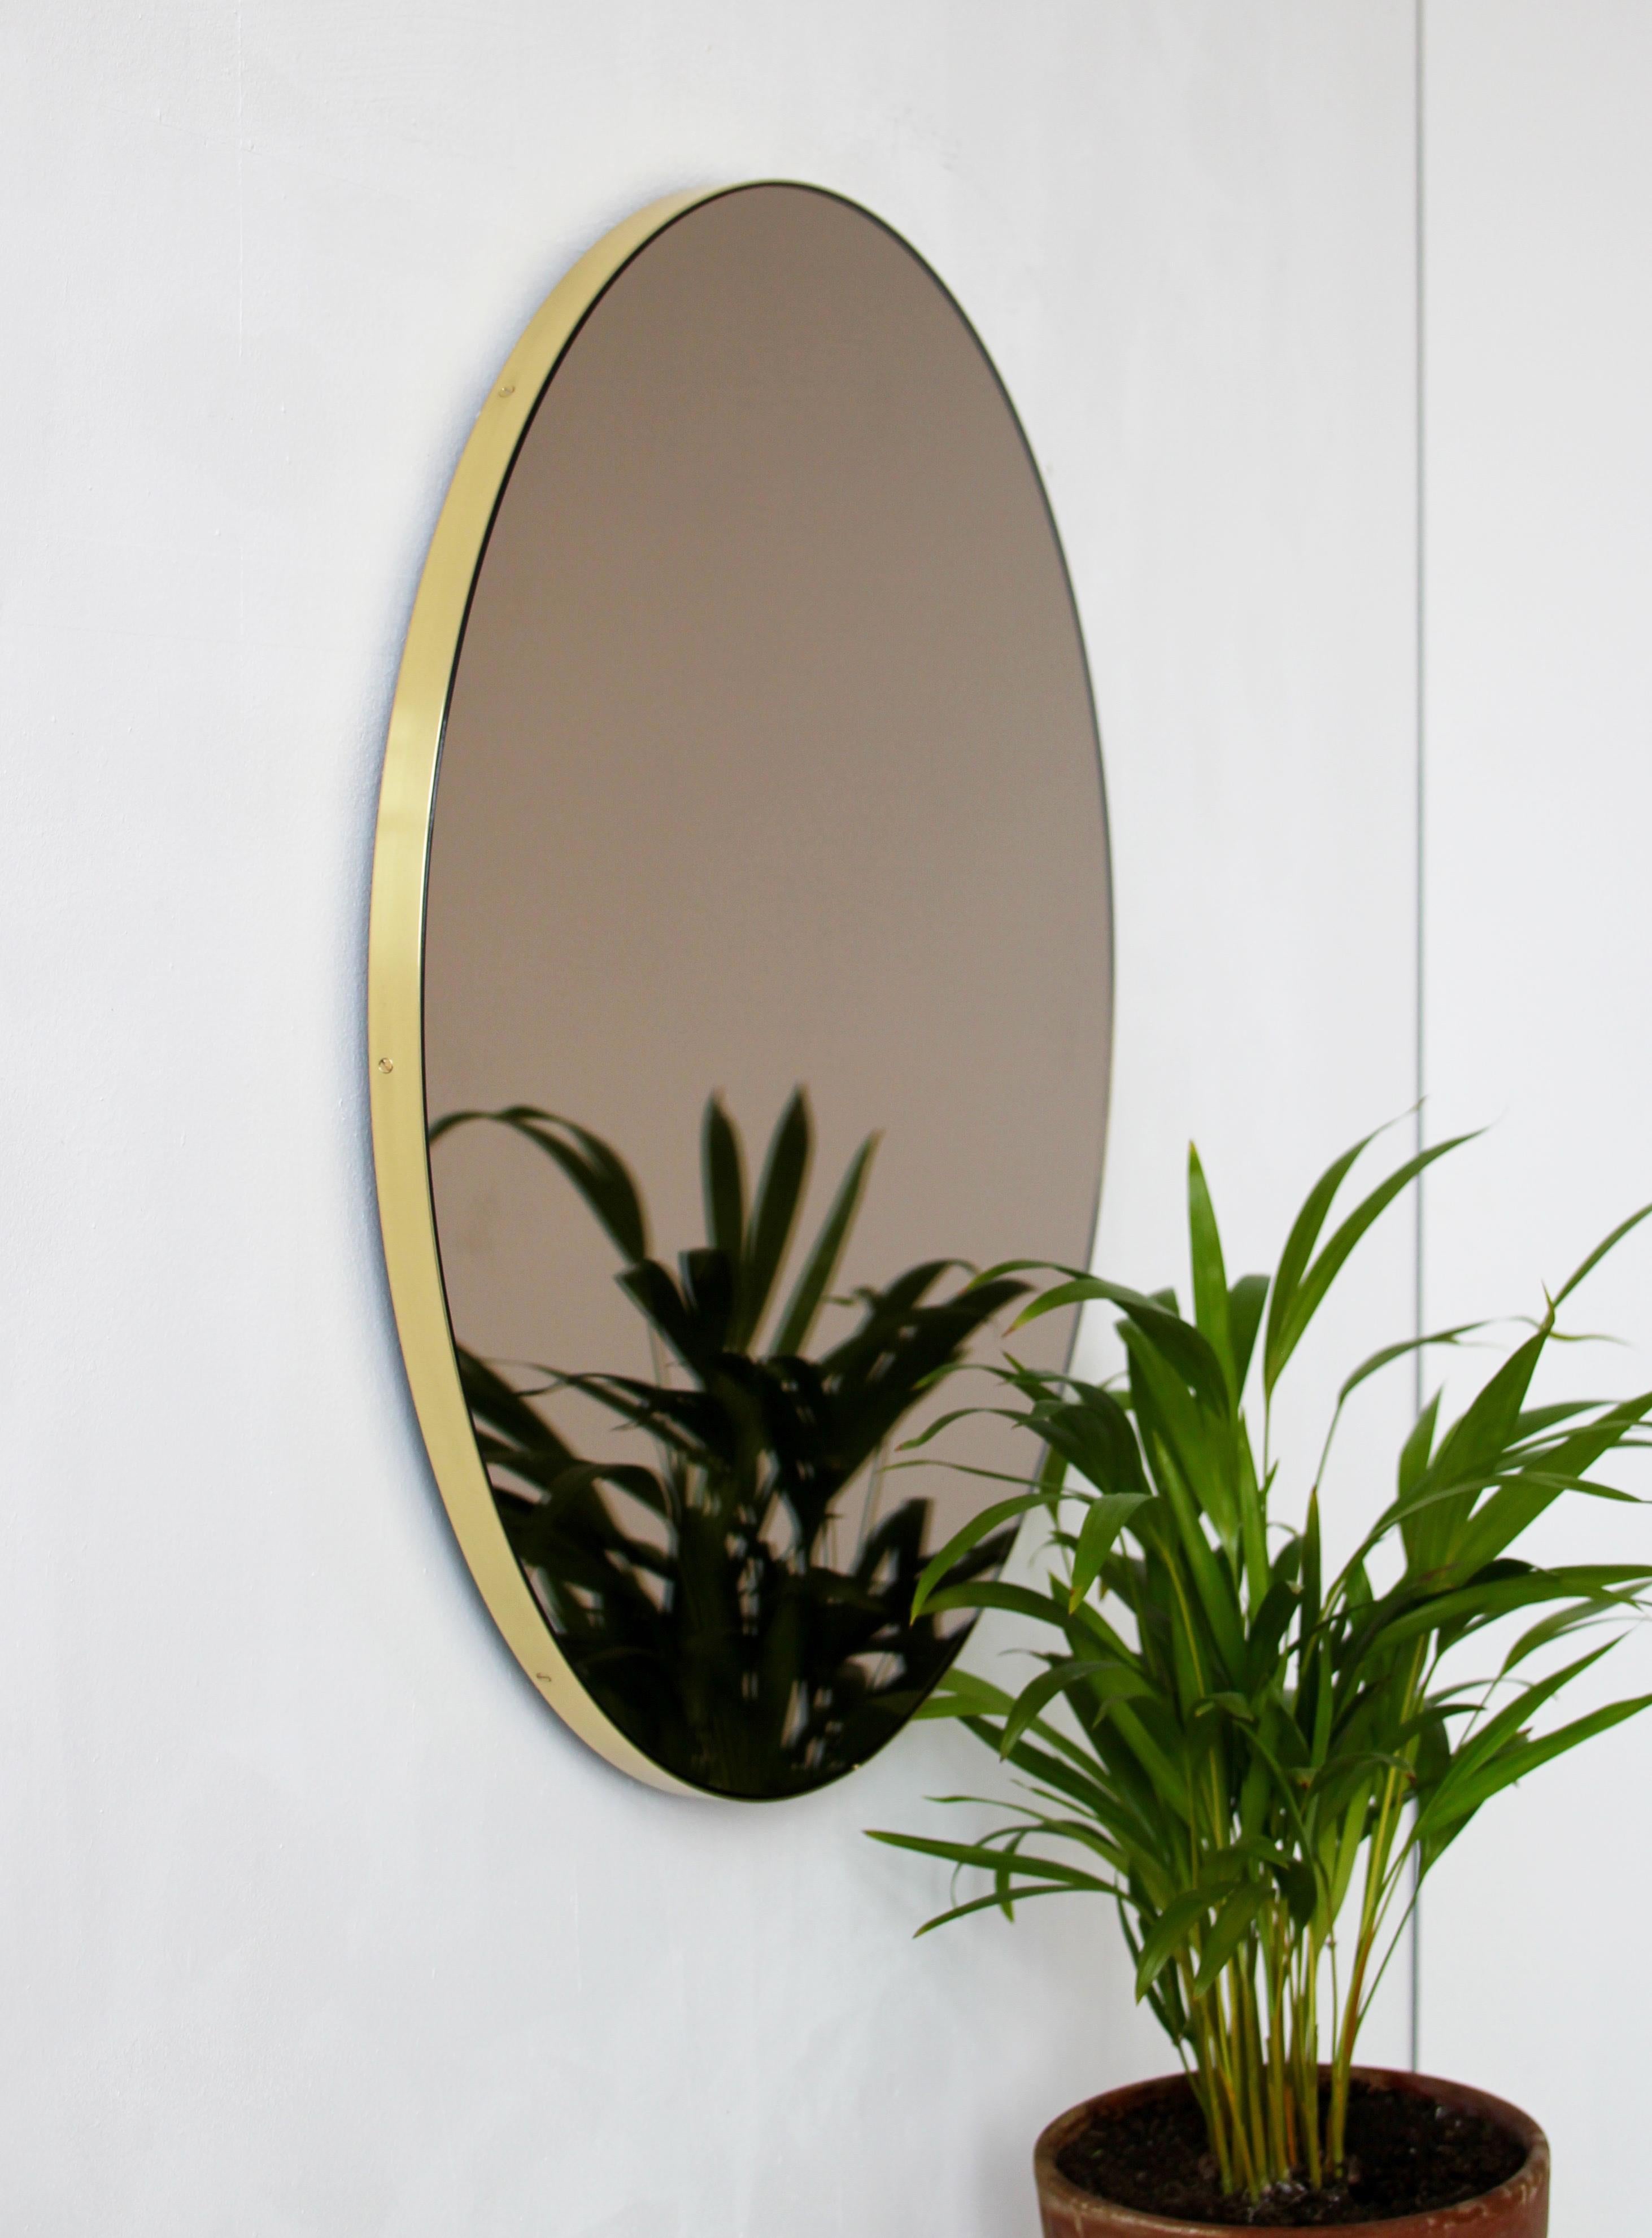 Miroir rond Orbis™ contemporain teinté de bronze avec un cadre minimaliste en laiton brossé massif. Les détails et la finition, y compris les vis en laiton visibles, soulignent l'aspect artisanal et la qualité du miroir, véritable signature de notre